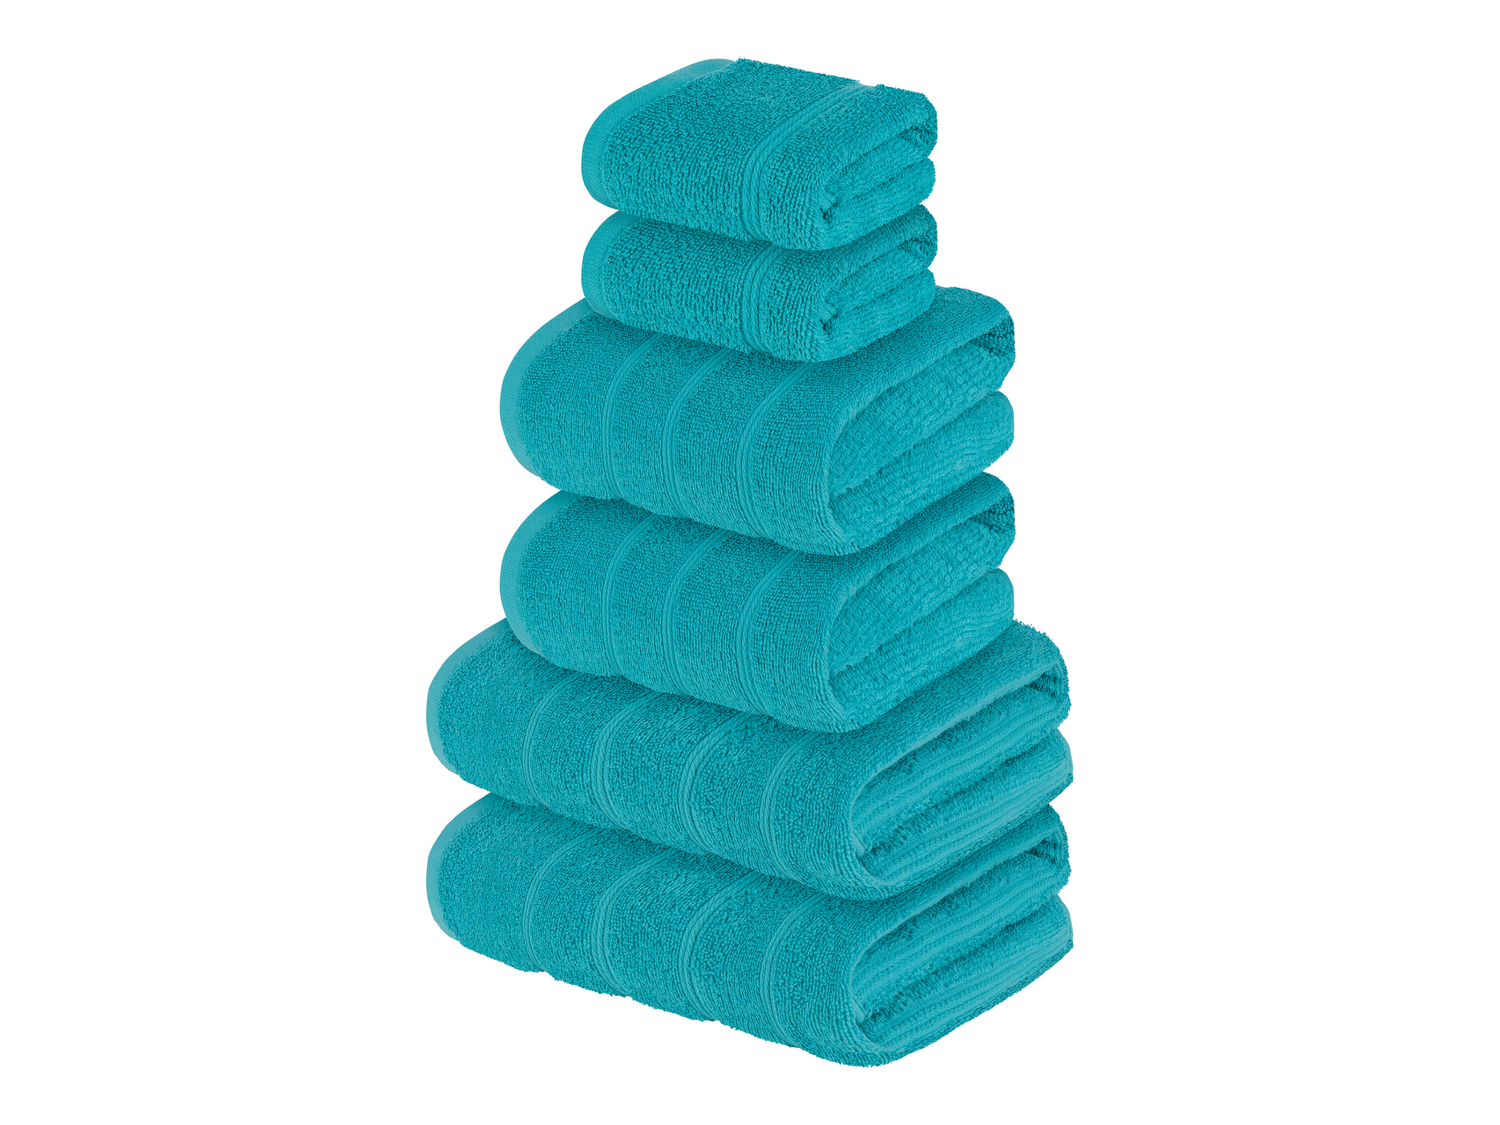 Set asciugamani Livarno, prezzo 9.99 € 
6 pezzi 
- Puro cotone
Prodotto sostenibile ...